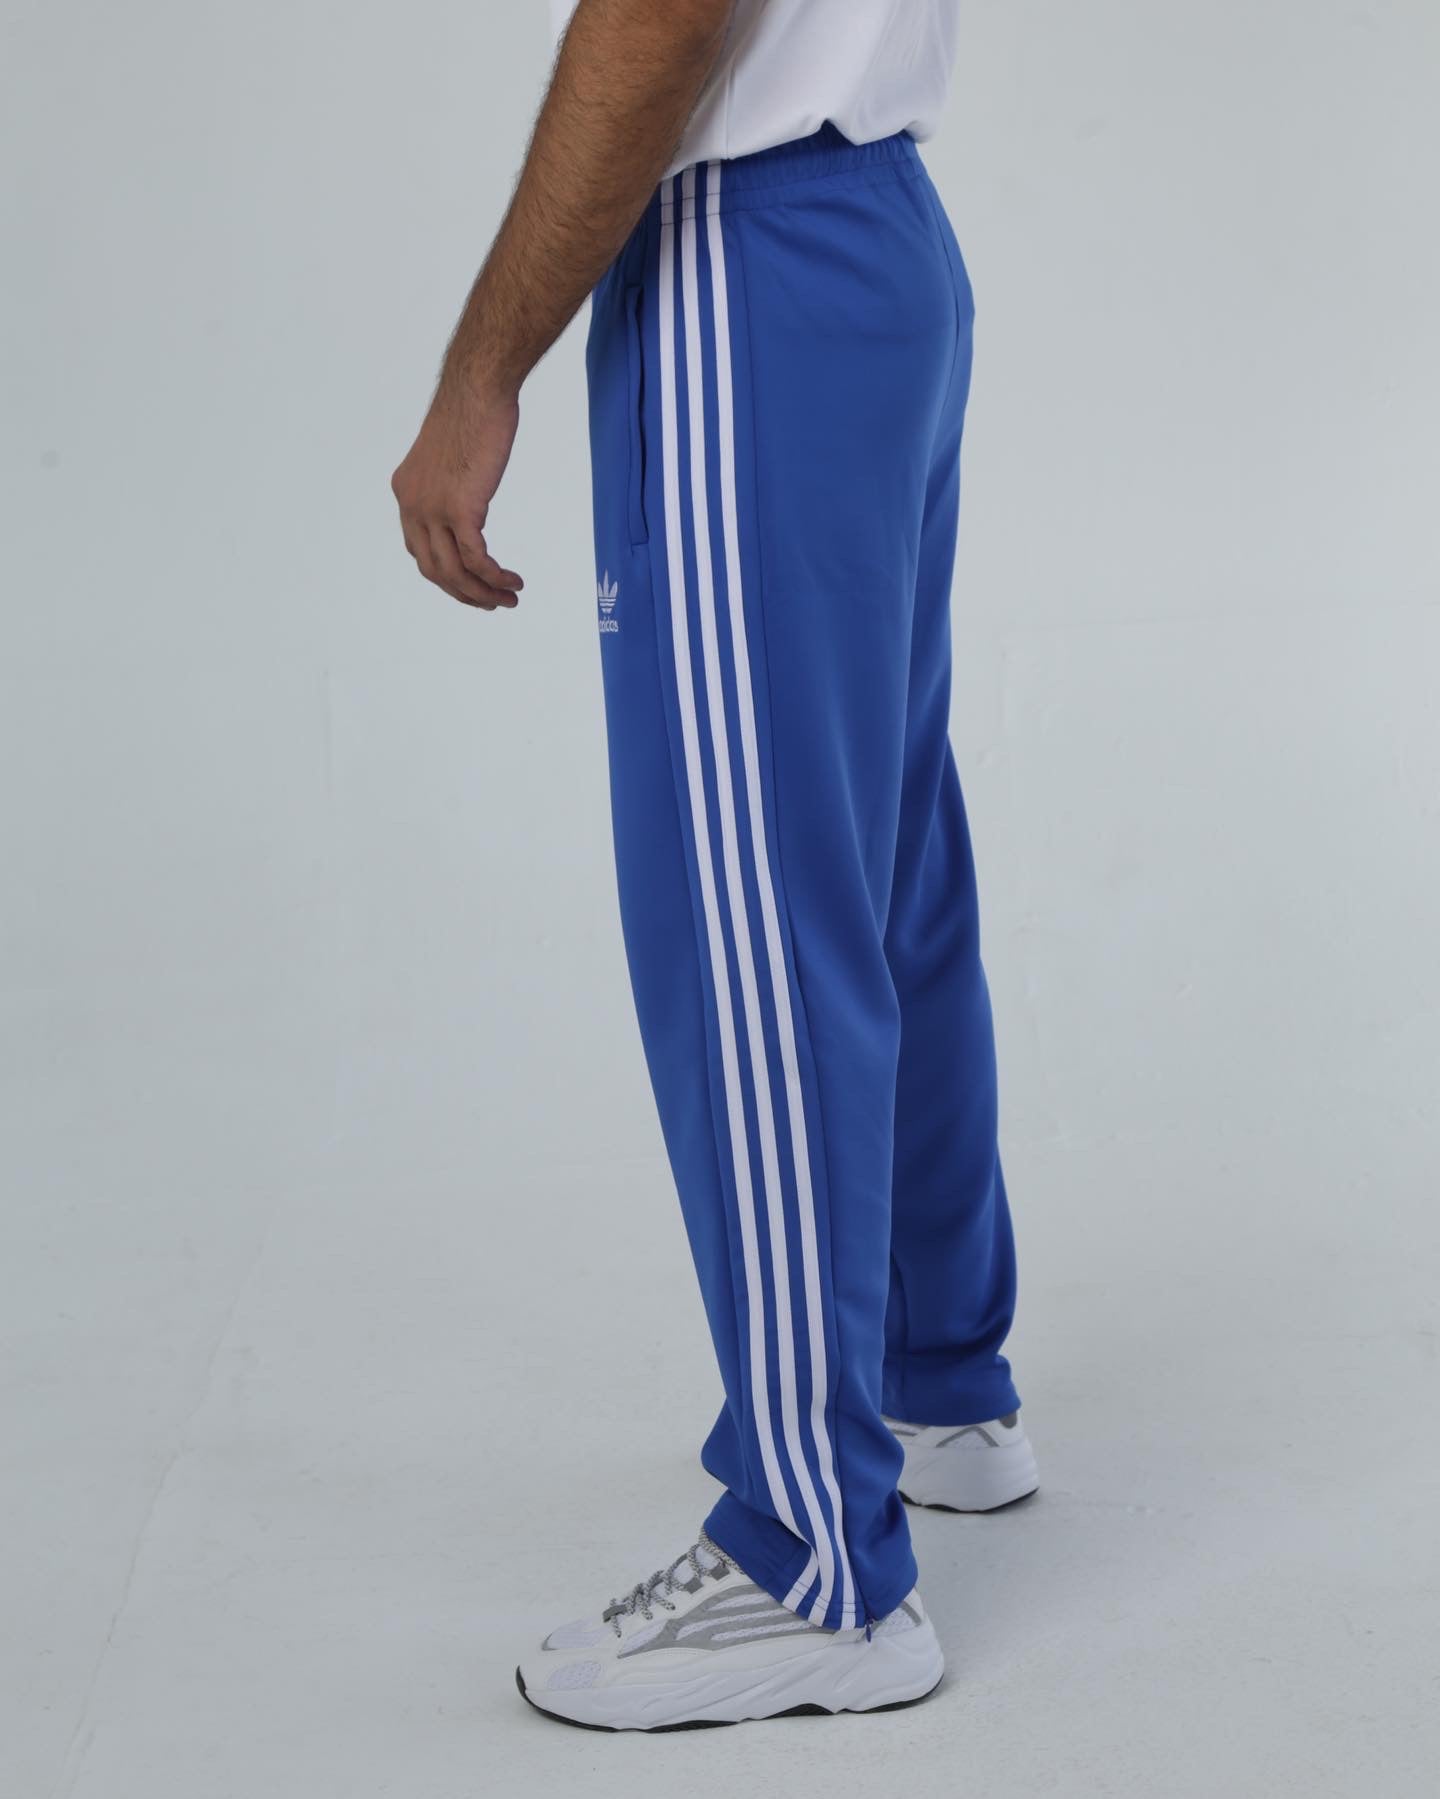 Balenciaga x Adidas Pantashoes Track Pants - Farfetch